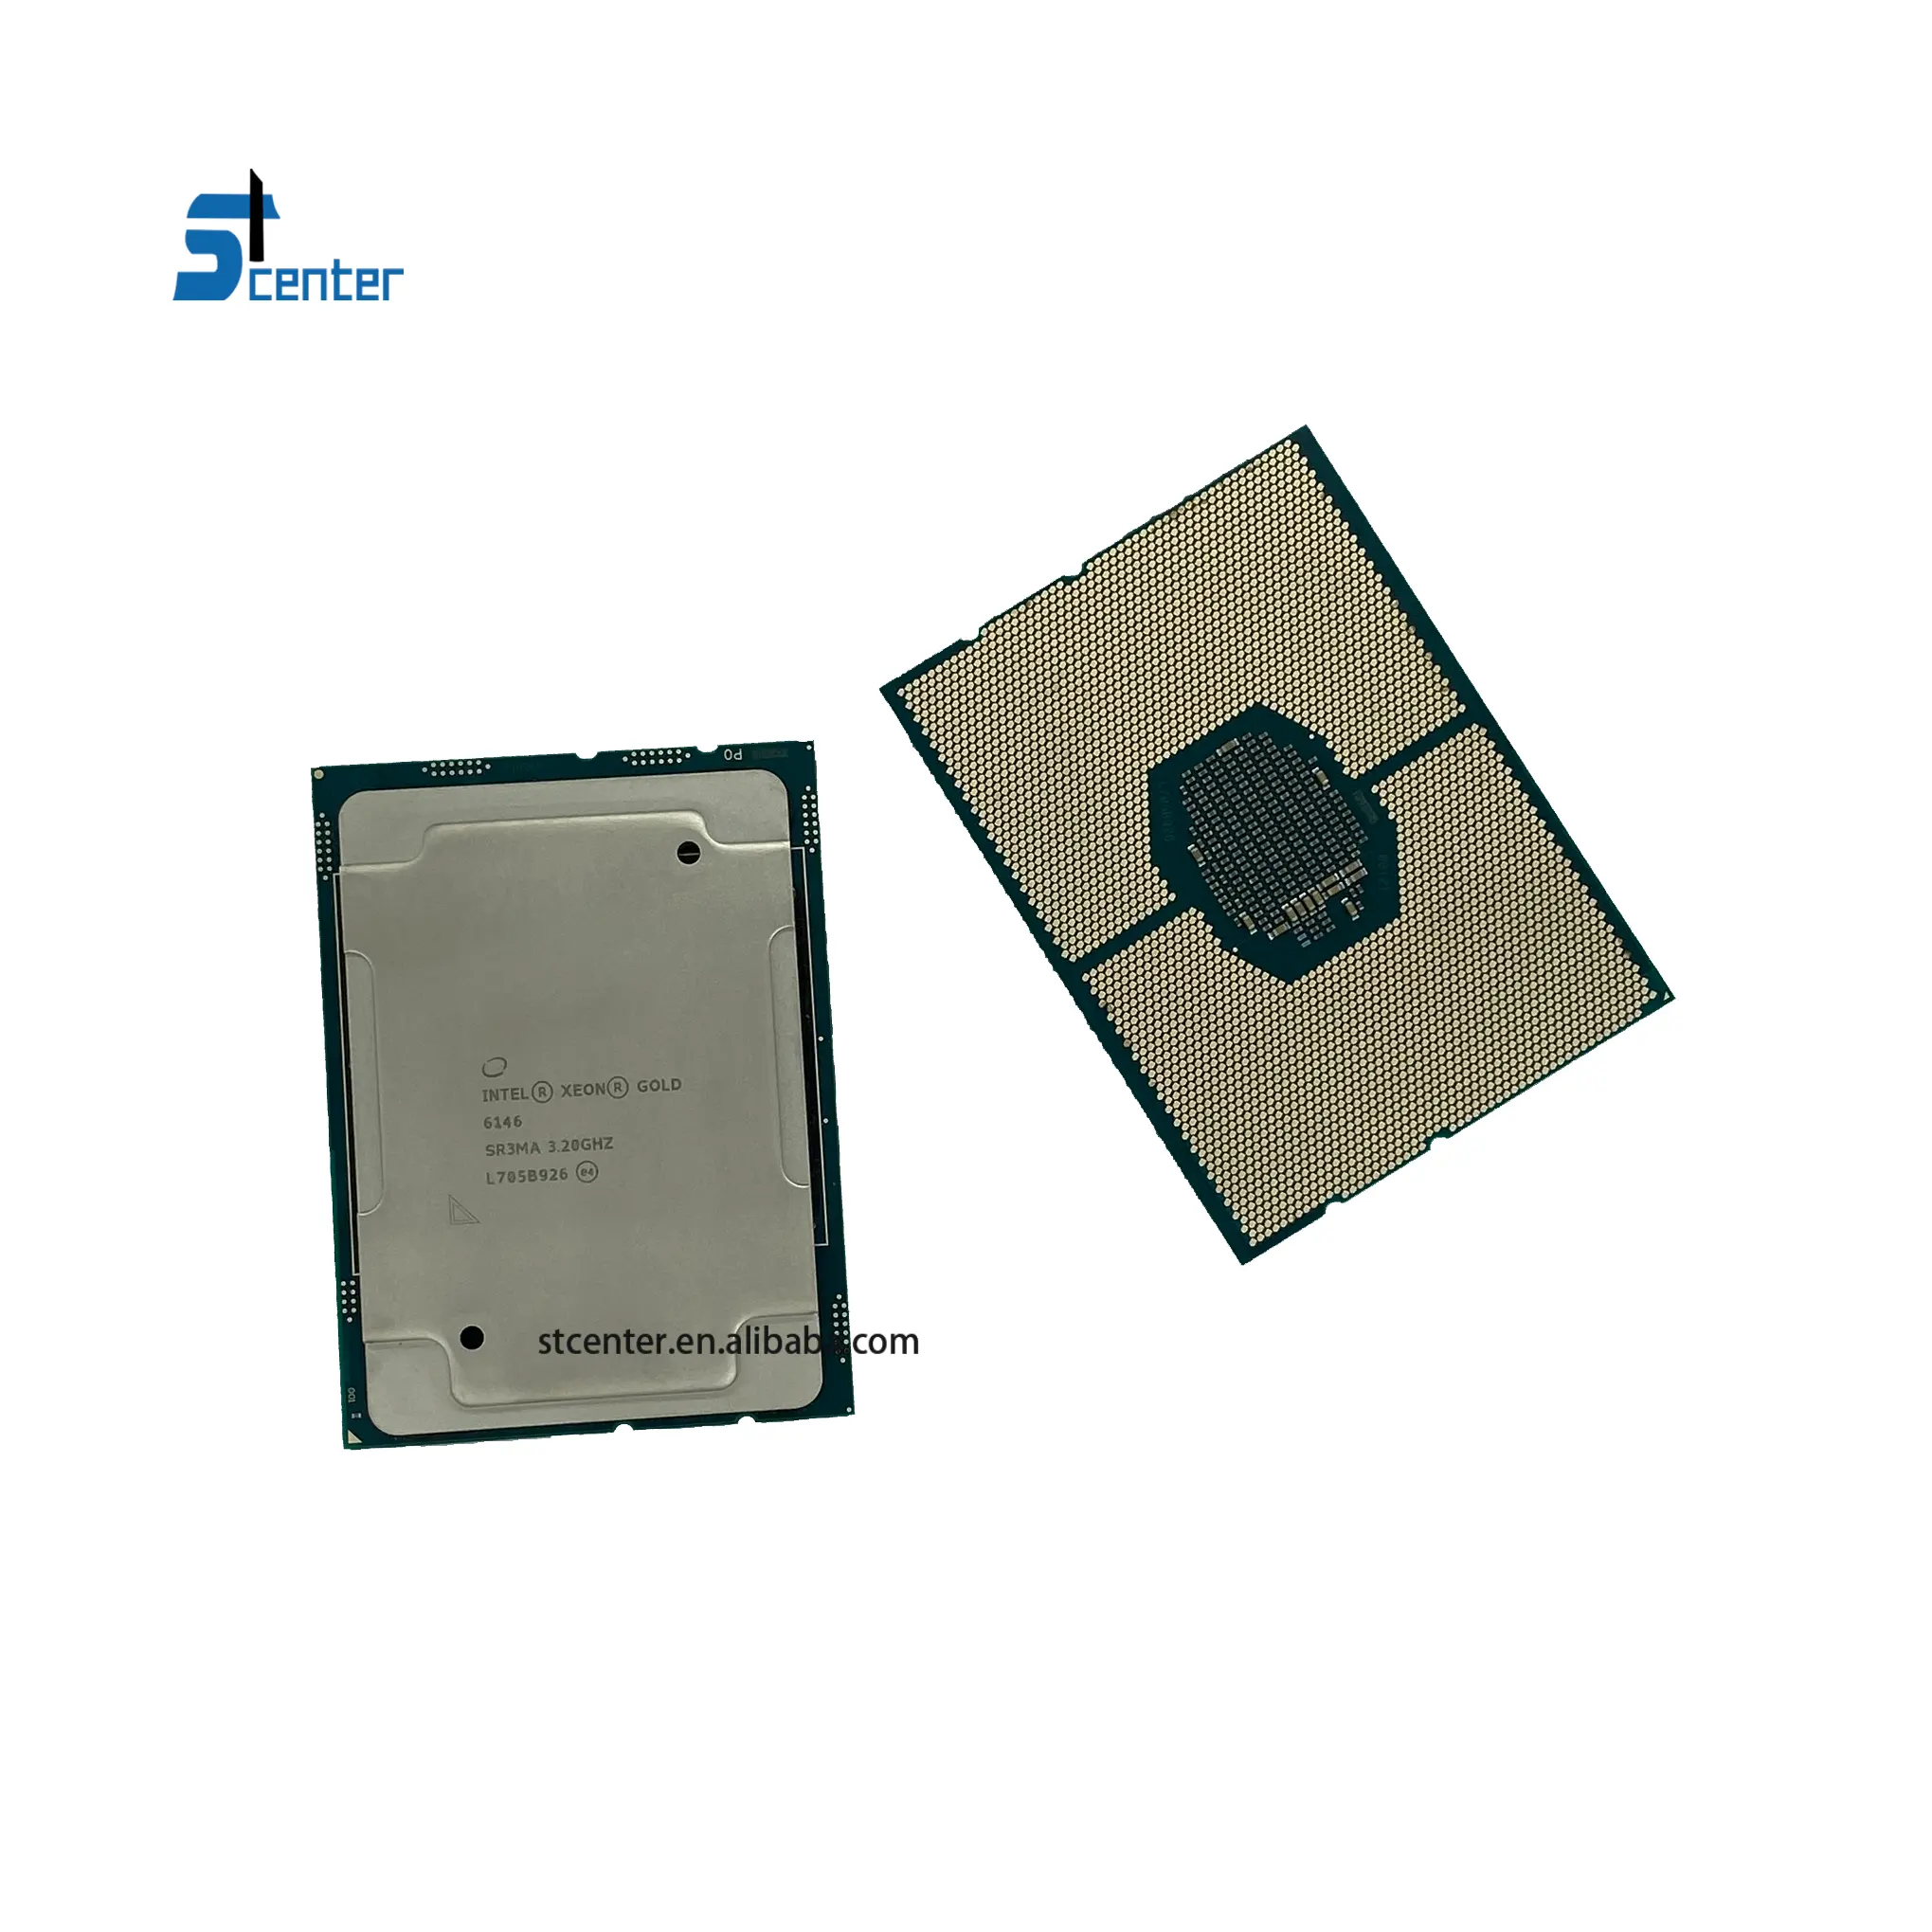 معالج Intel Xeon Gold 6226R, صنع في الصين معالج إنتل زيون Gold 6226R بسرعة 2.9 جيجاهرتز و 16 نواة لجهاز السيرفر من نوع Intel Xeon ، يعمل بتردد جيجاهرتز ، و مزود ب 16 نوع من النوتة